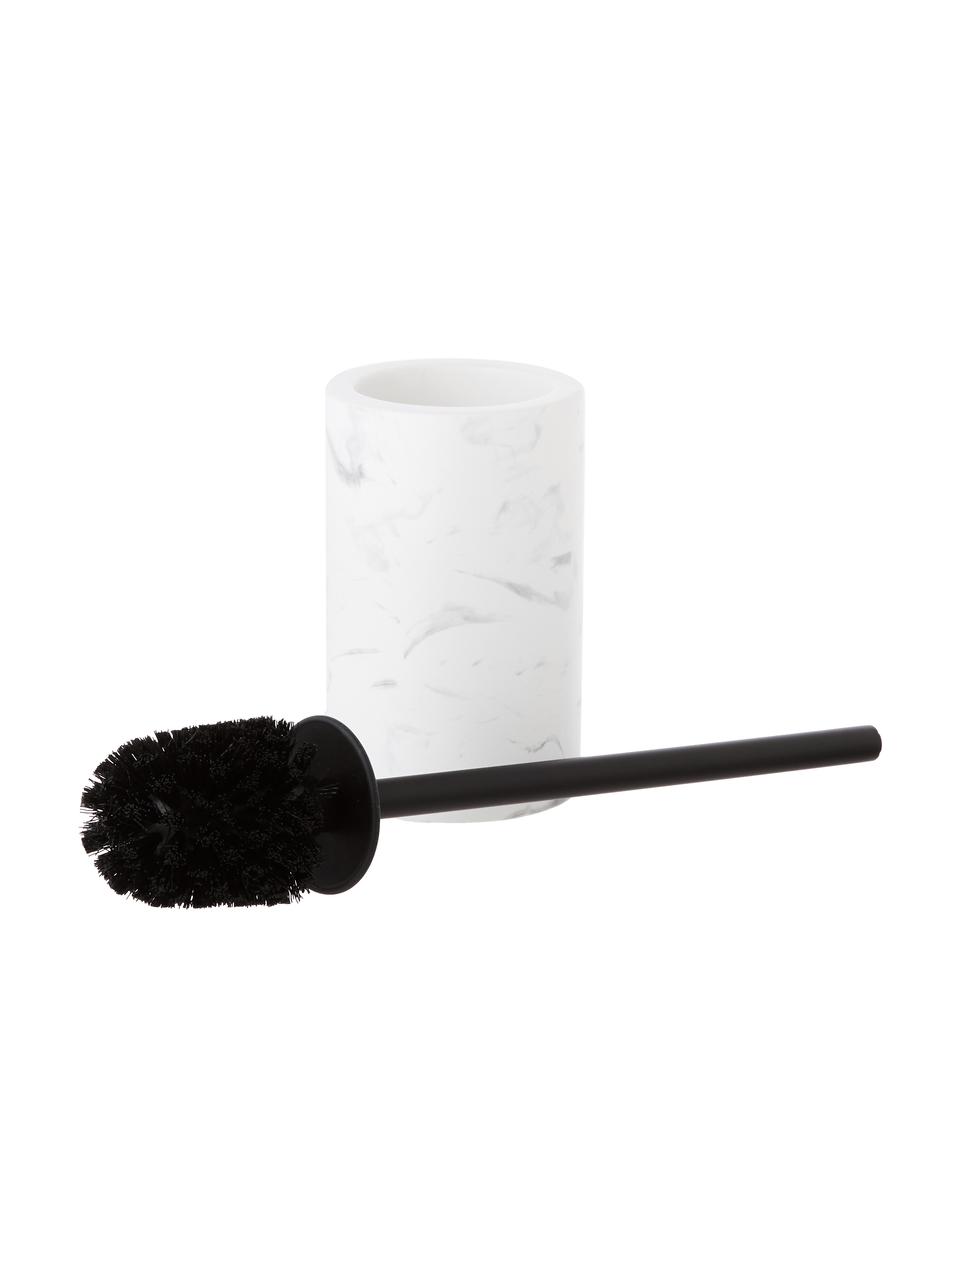 Szczotka do WC z ceramiki Daro, Biały, marmurowy, czarny, Ø 10 x W 43 cm